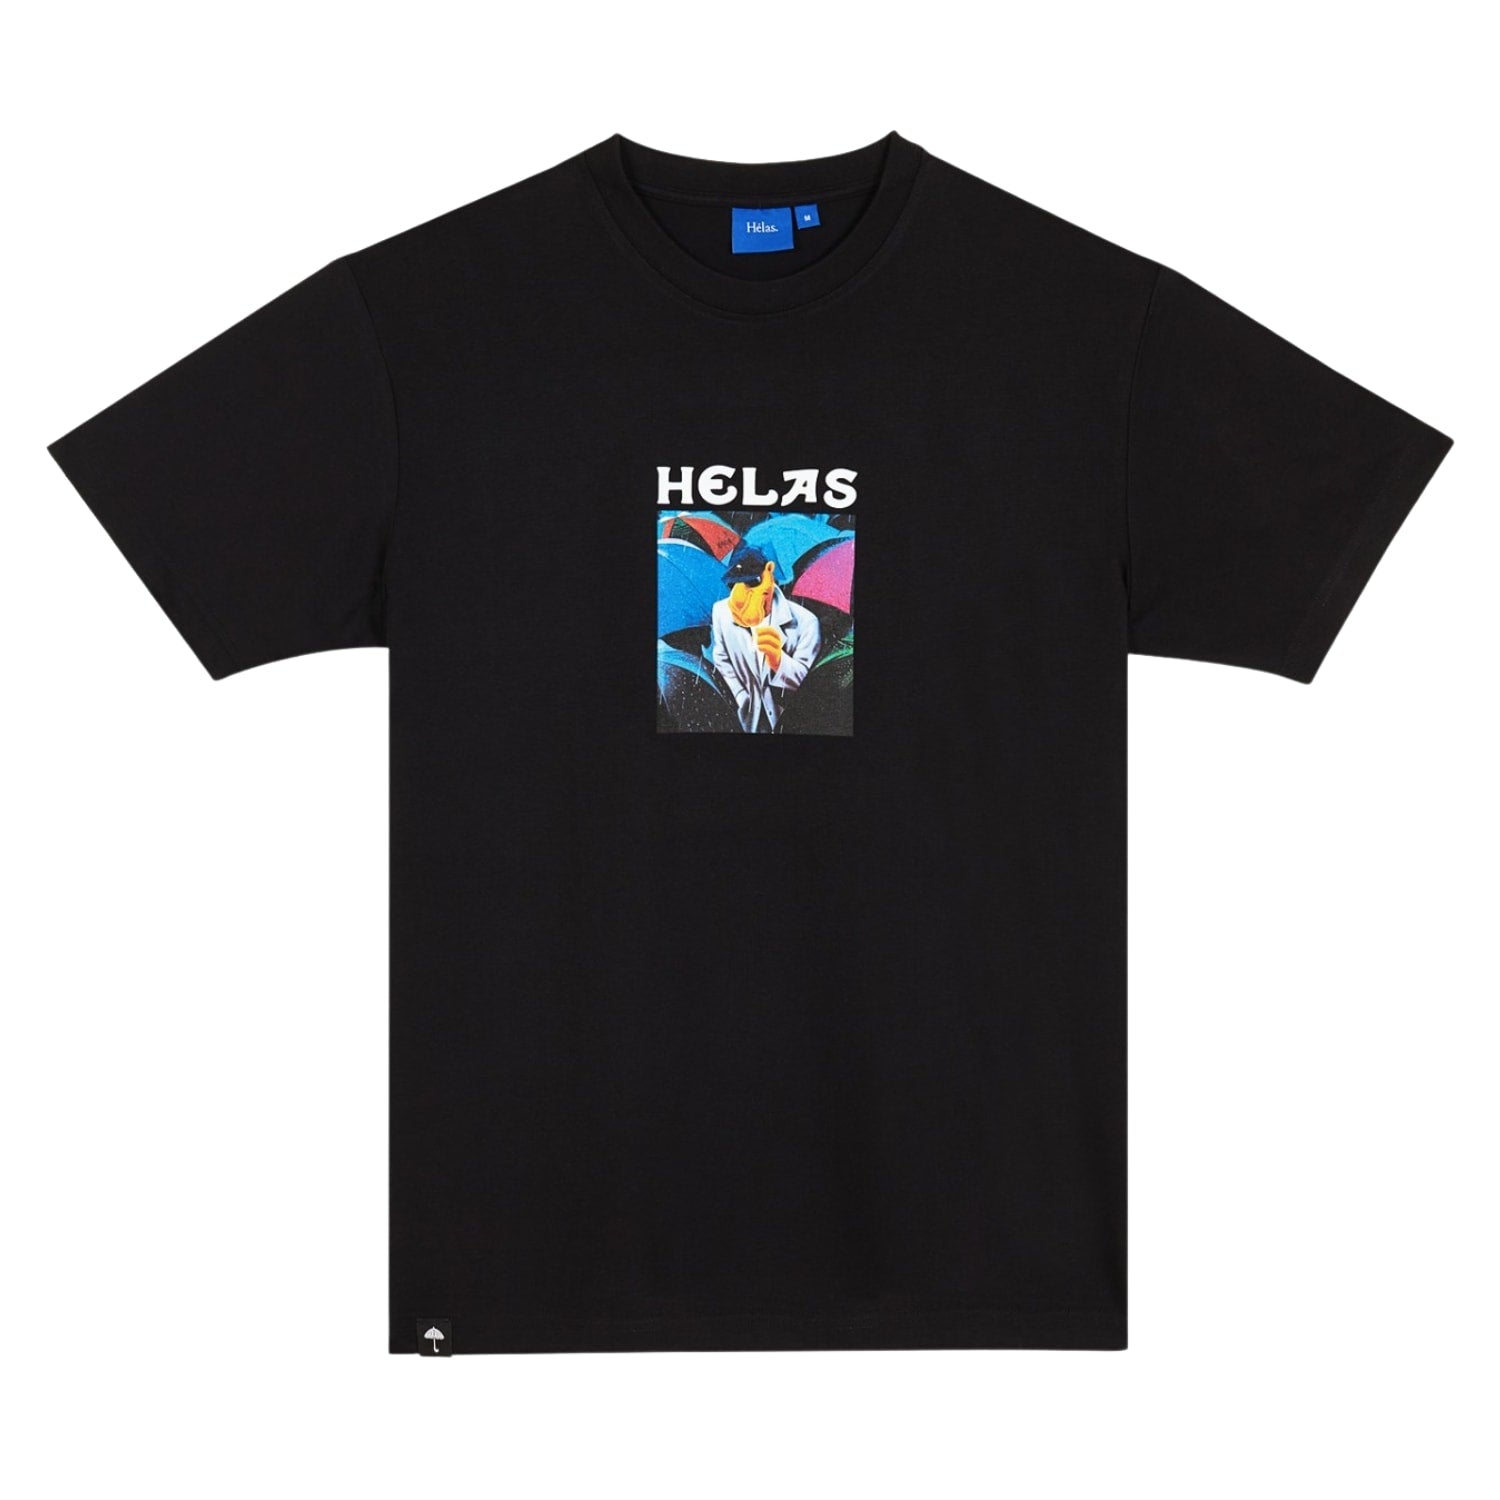 Helas Ciggy T-Shirt - Black - Mens Graphic T-Shirt by Helas